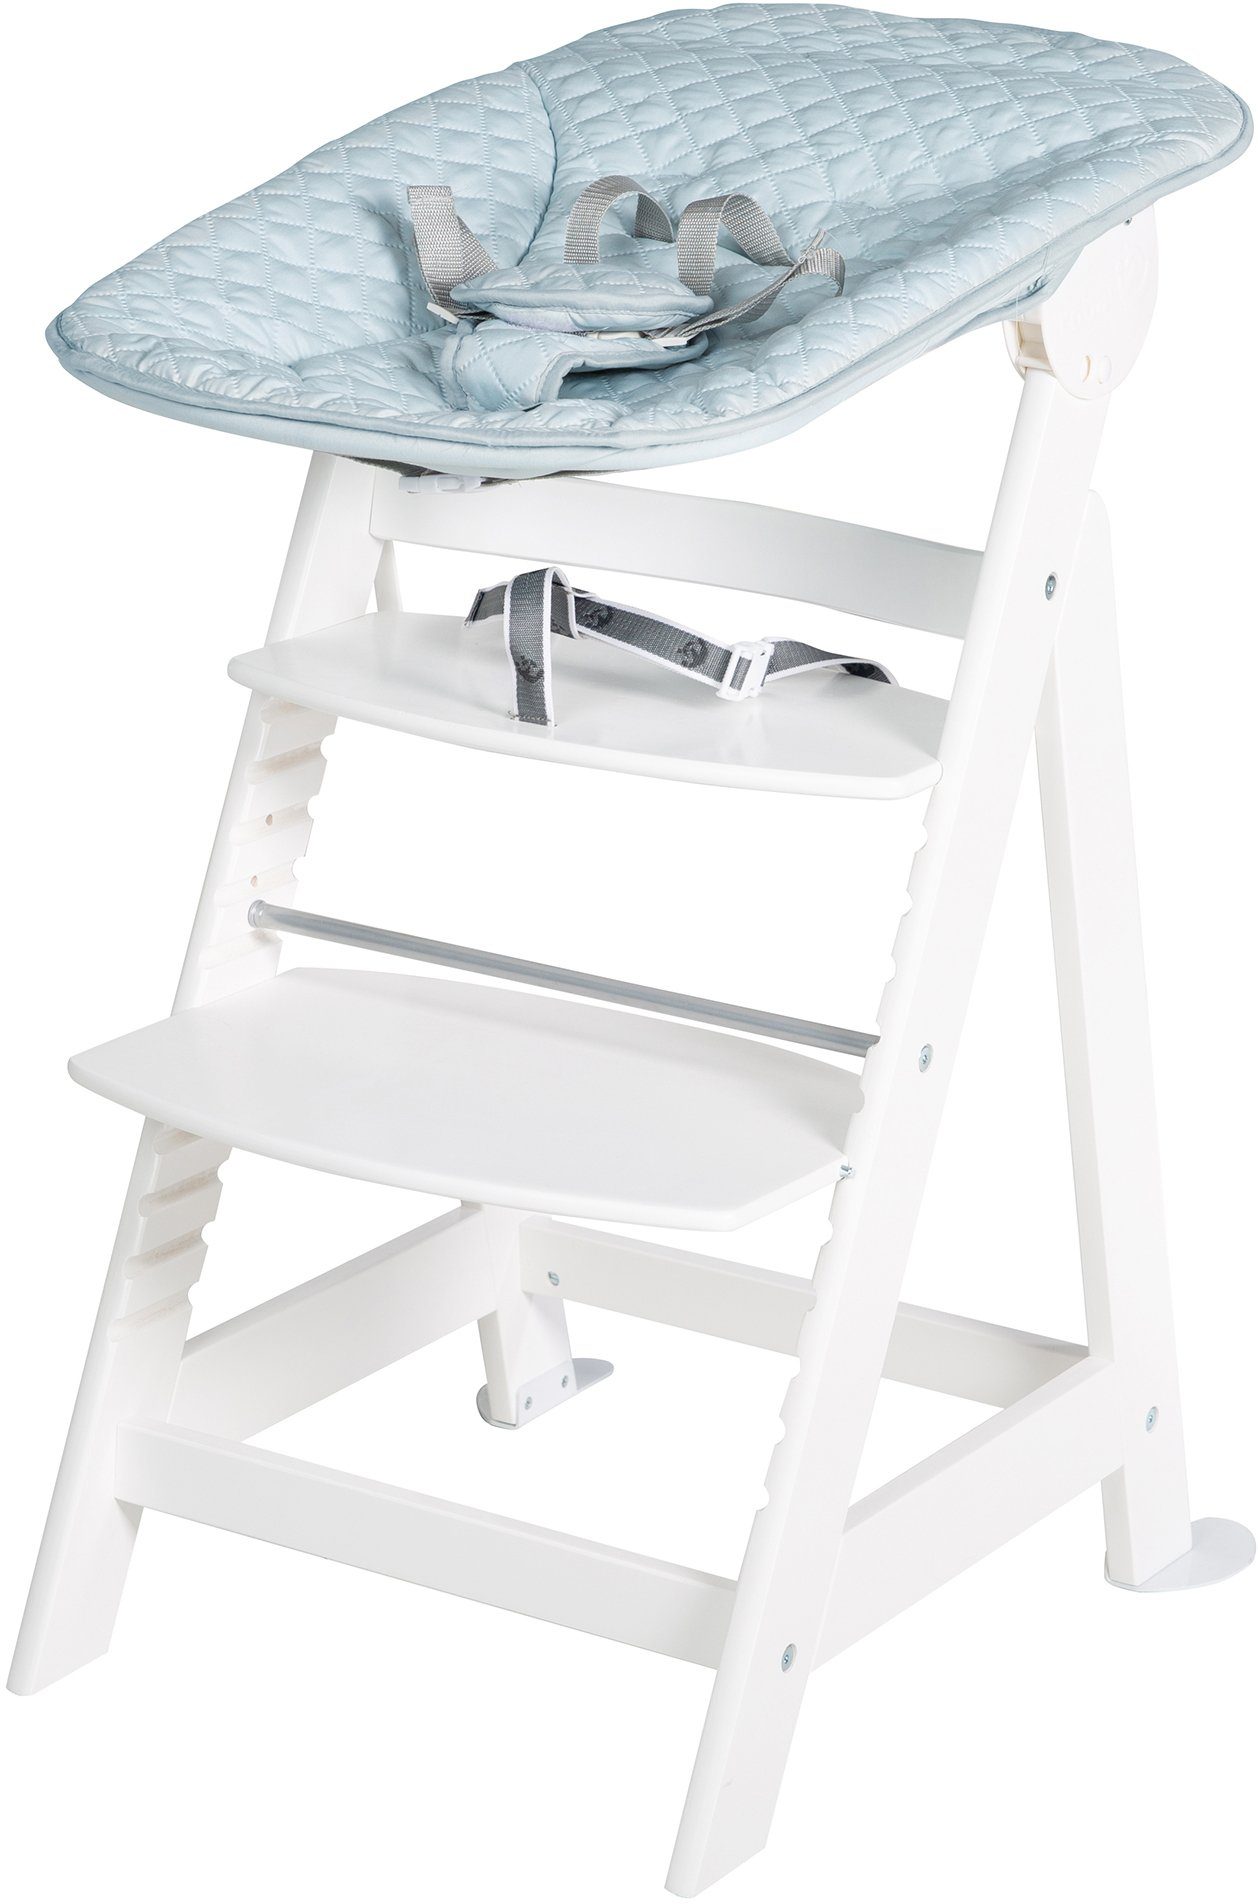 Treppenhochstuhl mit Up, 2-in-1 Neugeborenen-Aufsatz hellblau/sky/weiß Style, Set Born Hochstuhl roba®